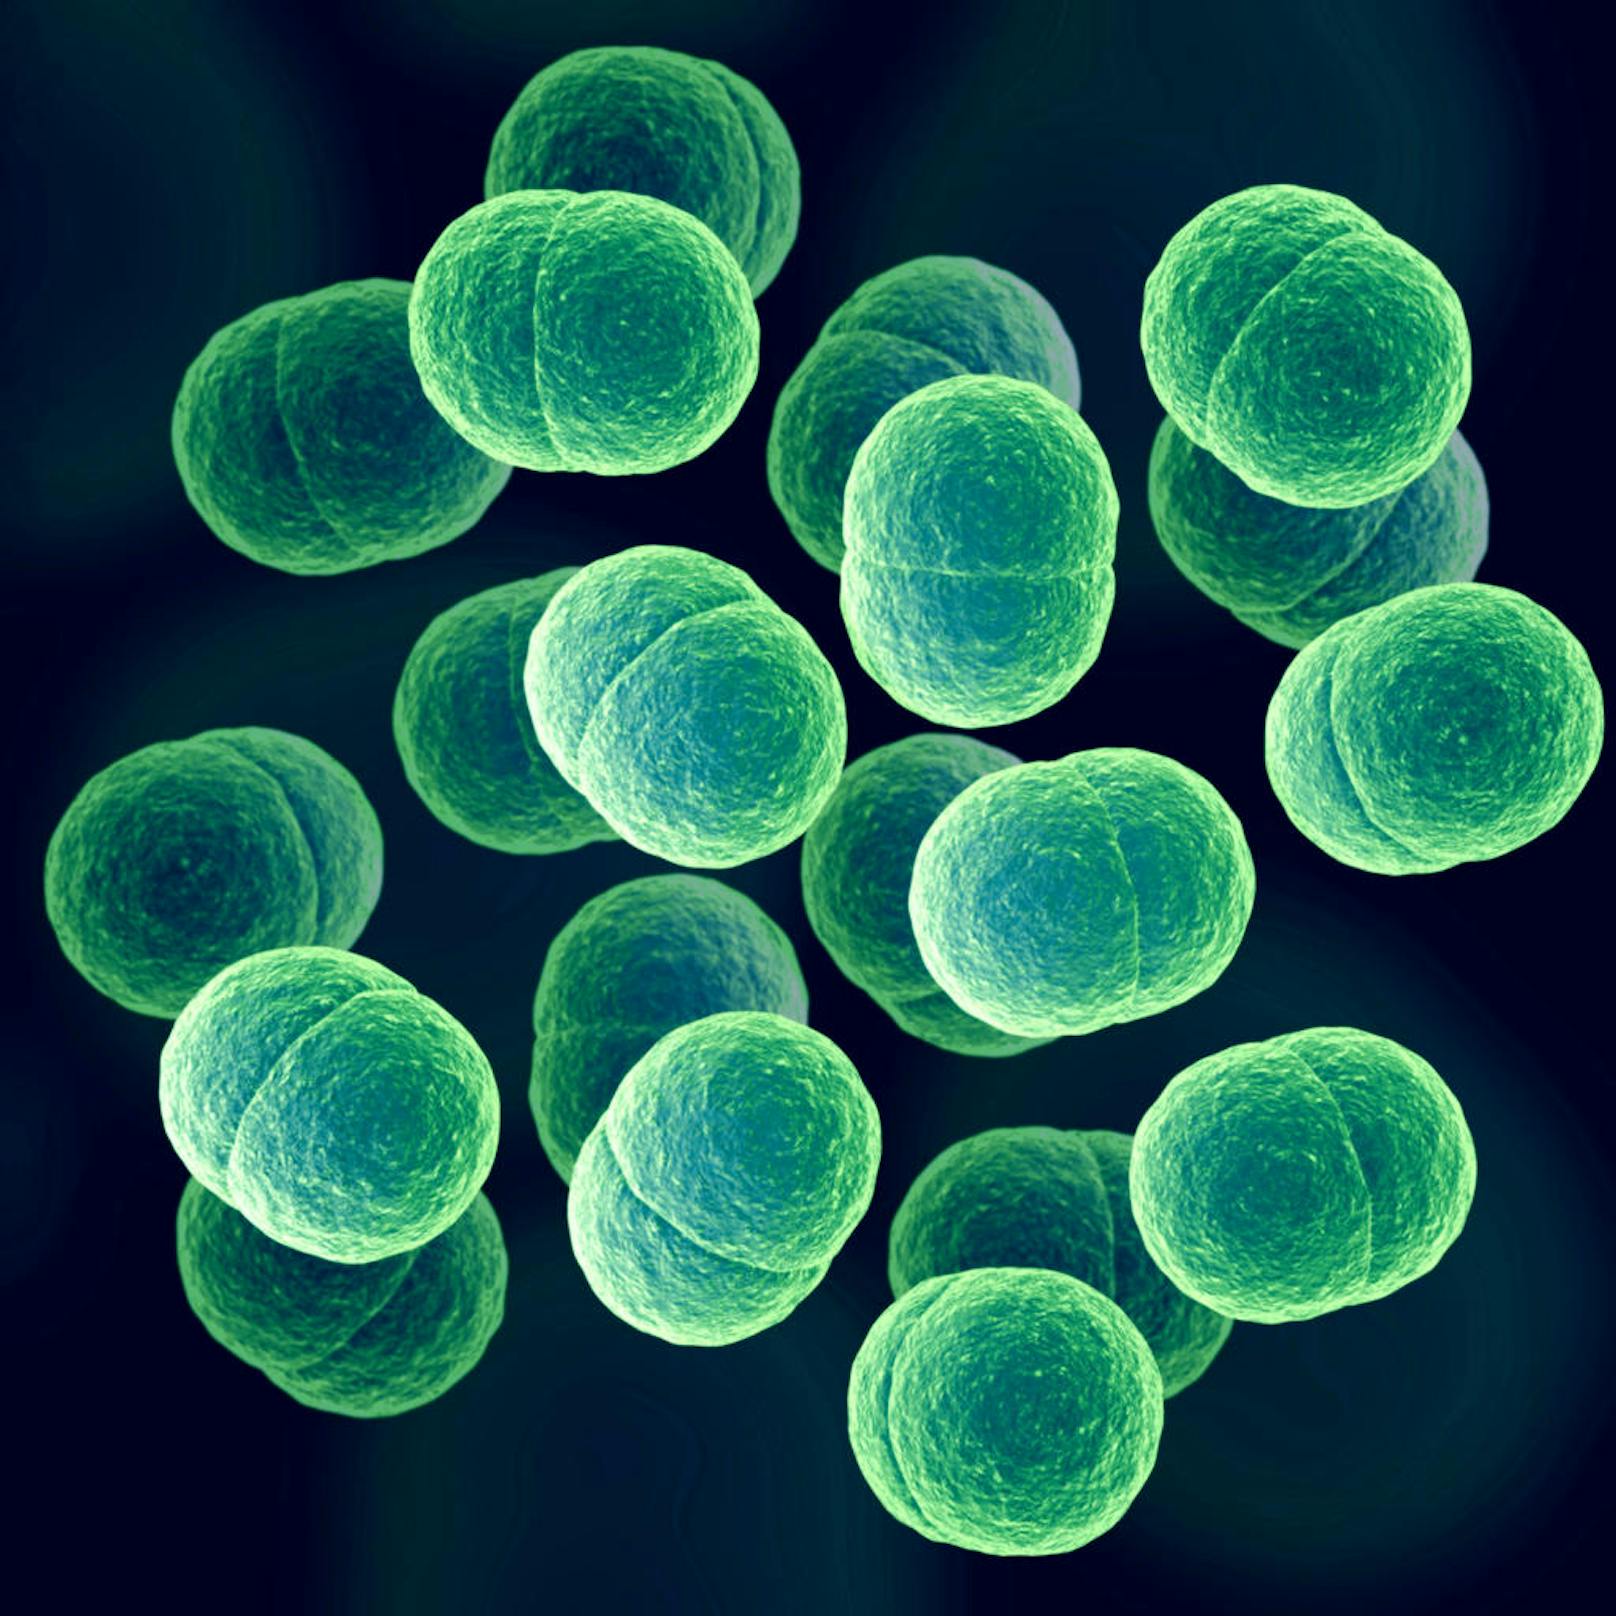 Das besagte Gen macht Macrococcus gegen alle Betalaktam-Antibiotika resistent, wie die Wissenschaftler weiter feststellten. Auch gegenüber der neuesten Generation von Breitband-Antibiotika, die zur Behandlung von Spitalinfektionen mit Staphylococcus eingesetzt werden.